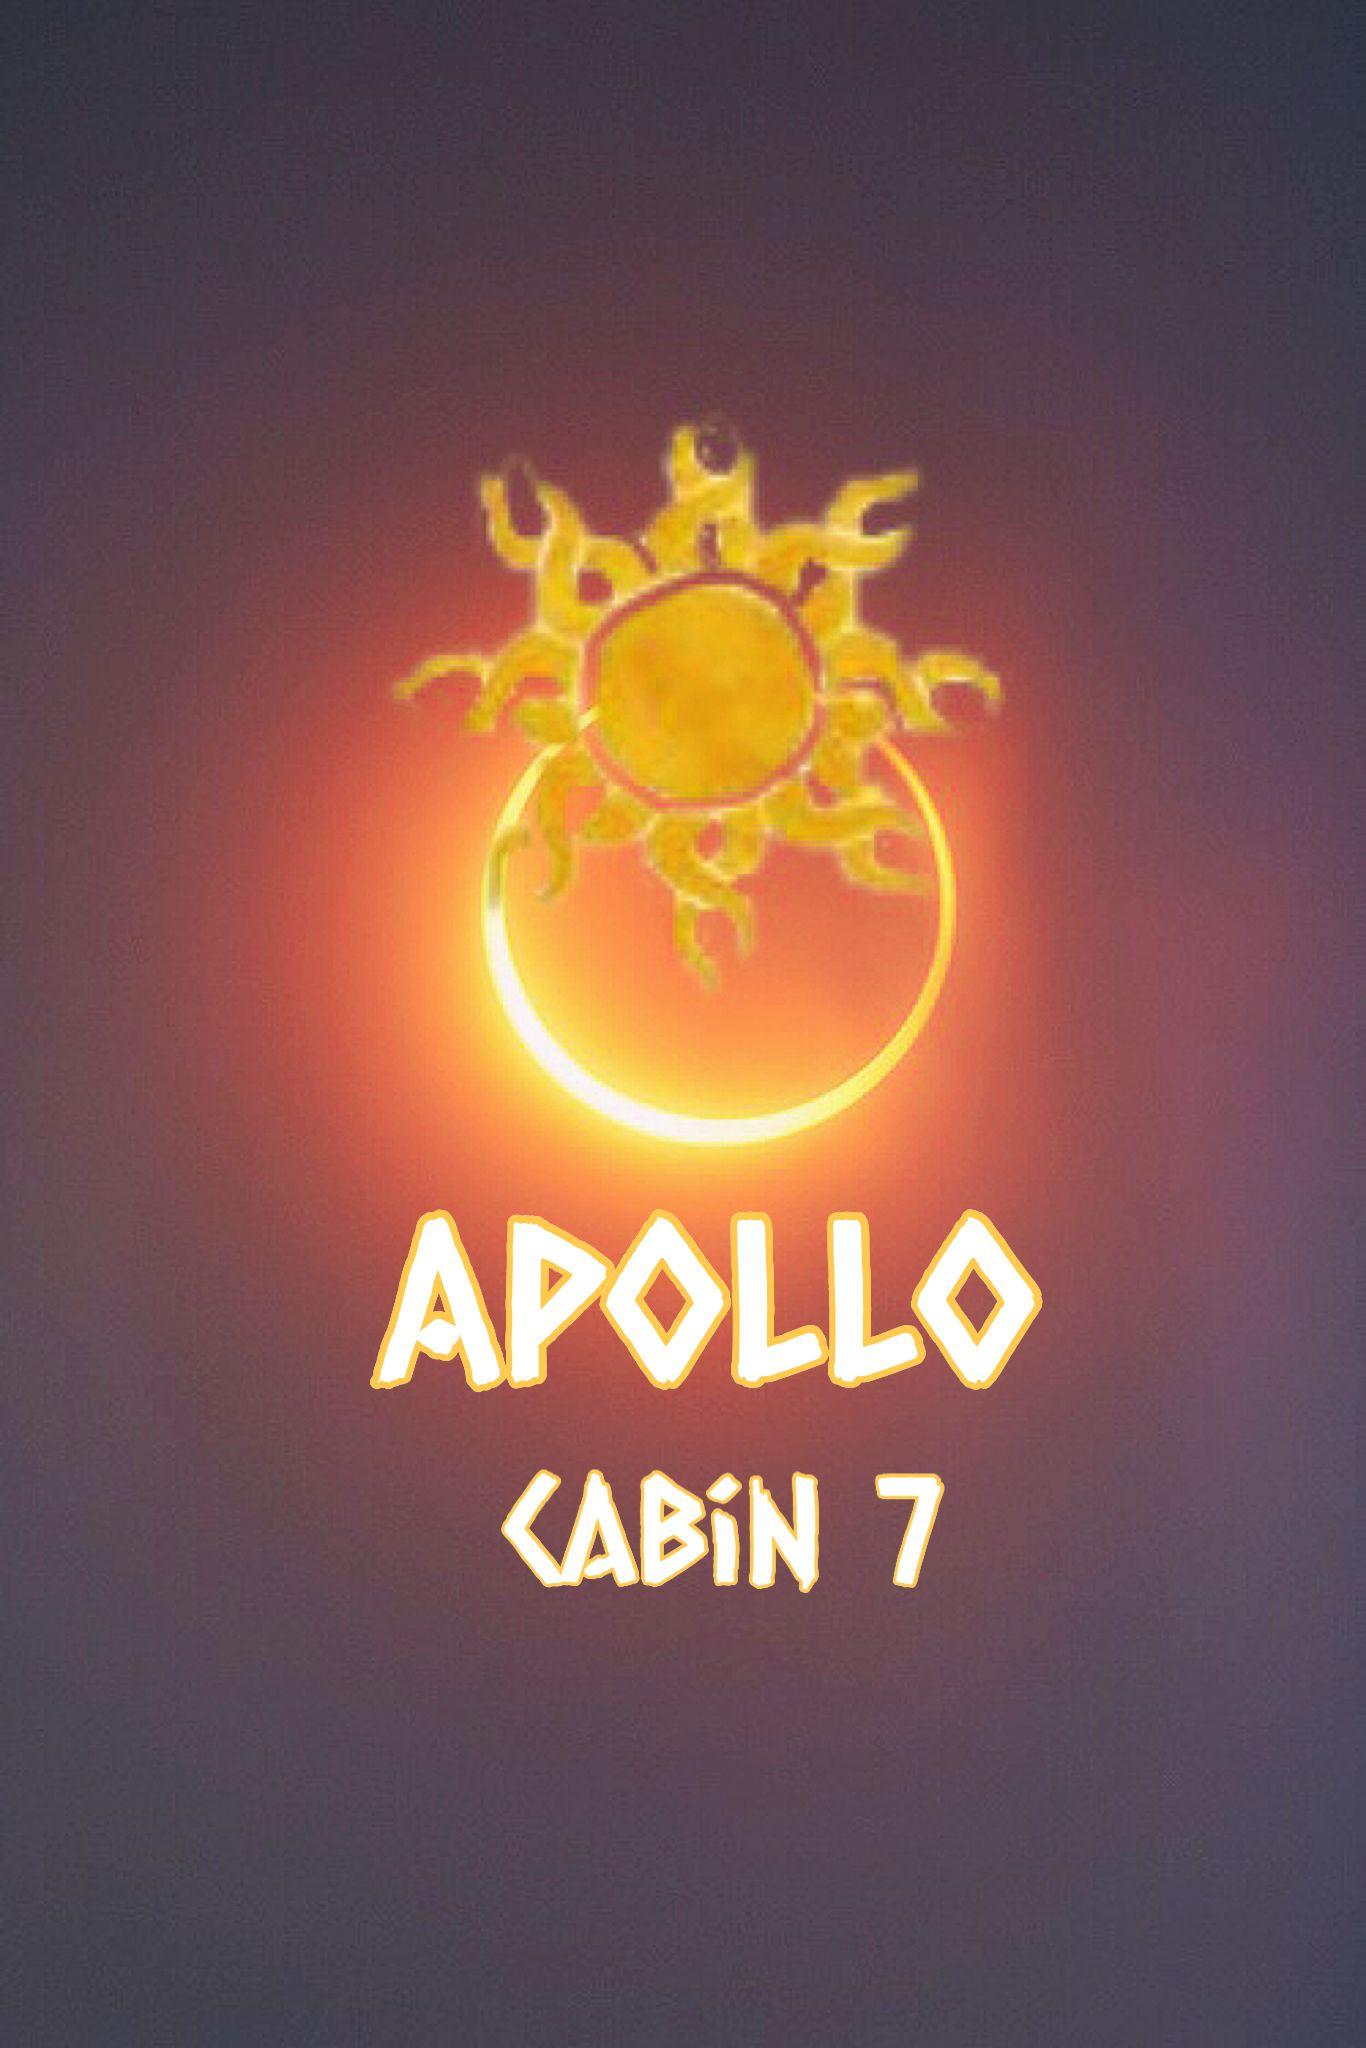 Apollo cabin Percy Jackson wallpaper. Mythology and PJO